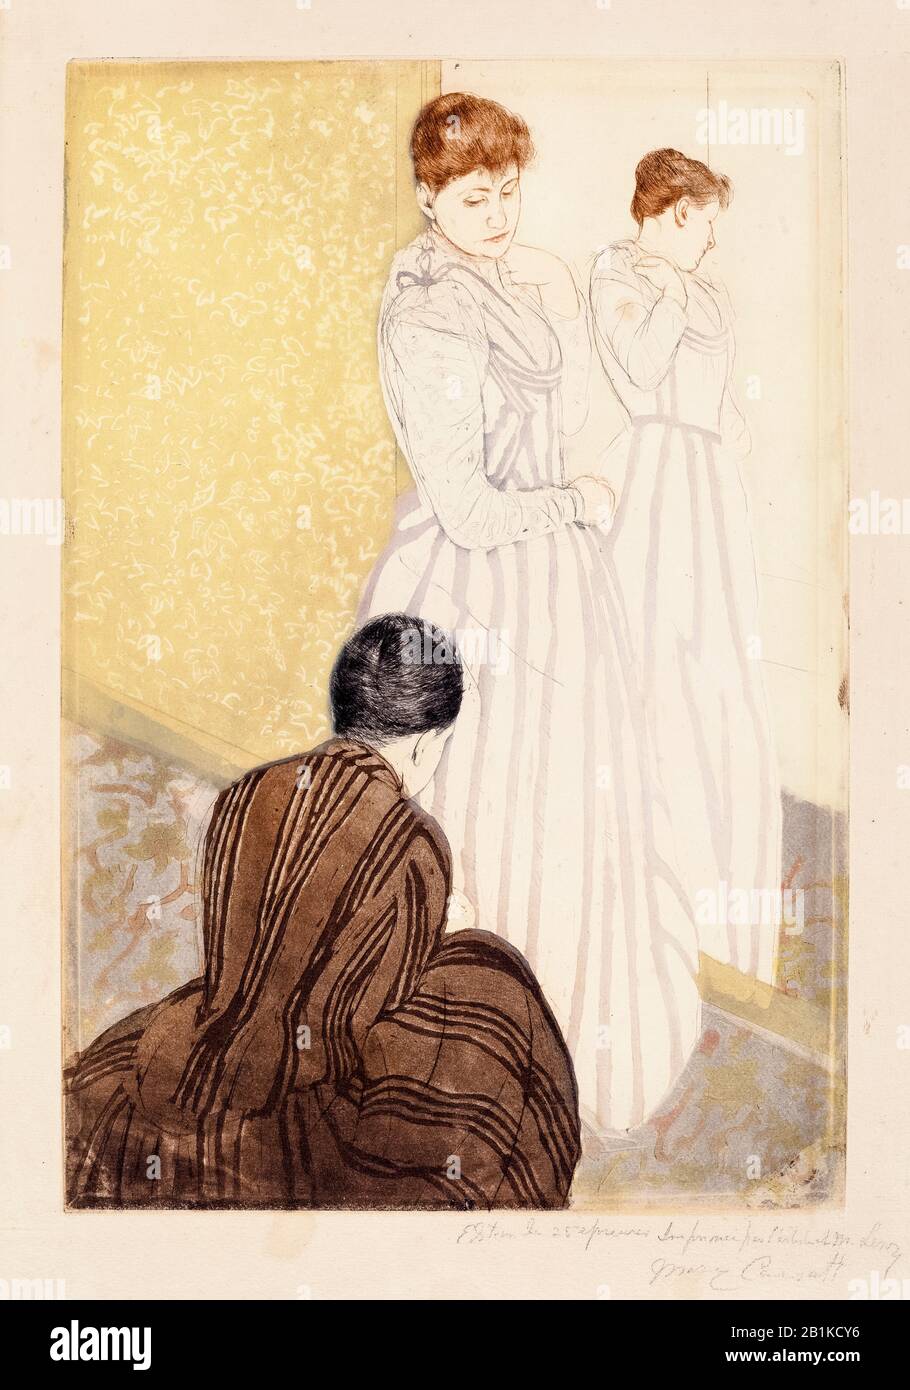 Mary Cassatt, farbiger Trockenpunktdruck, The Fitting, 1890-1891 Stockfoto